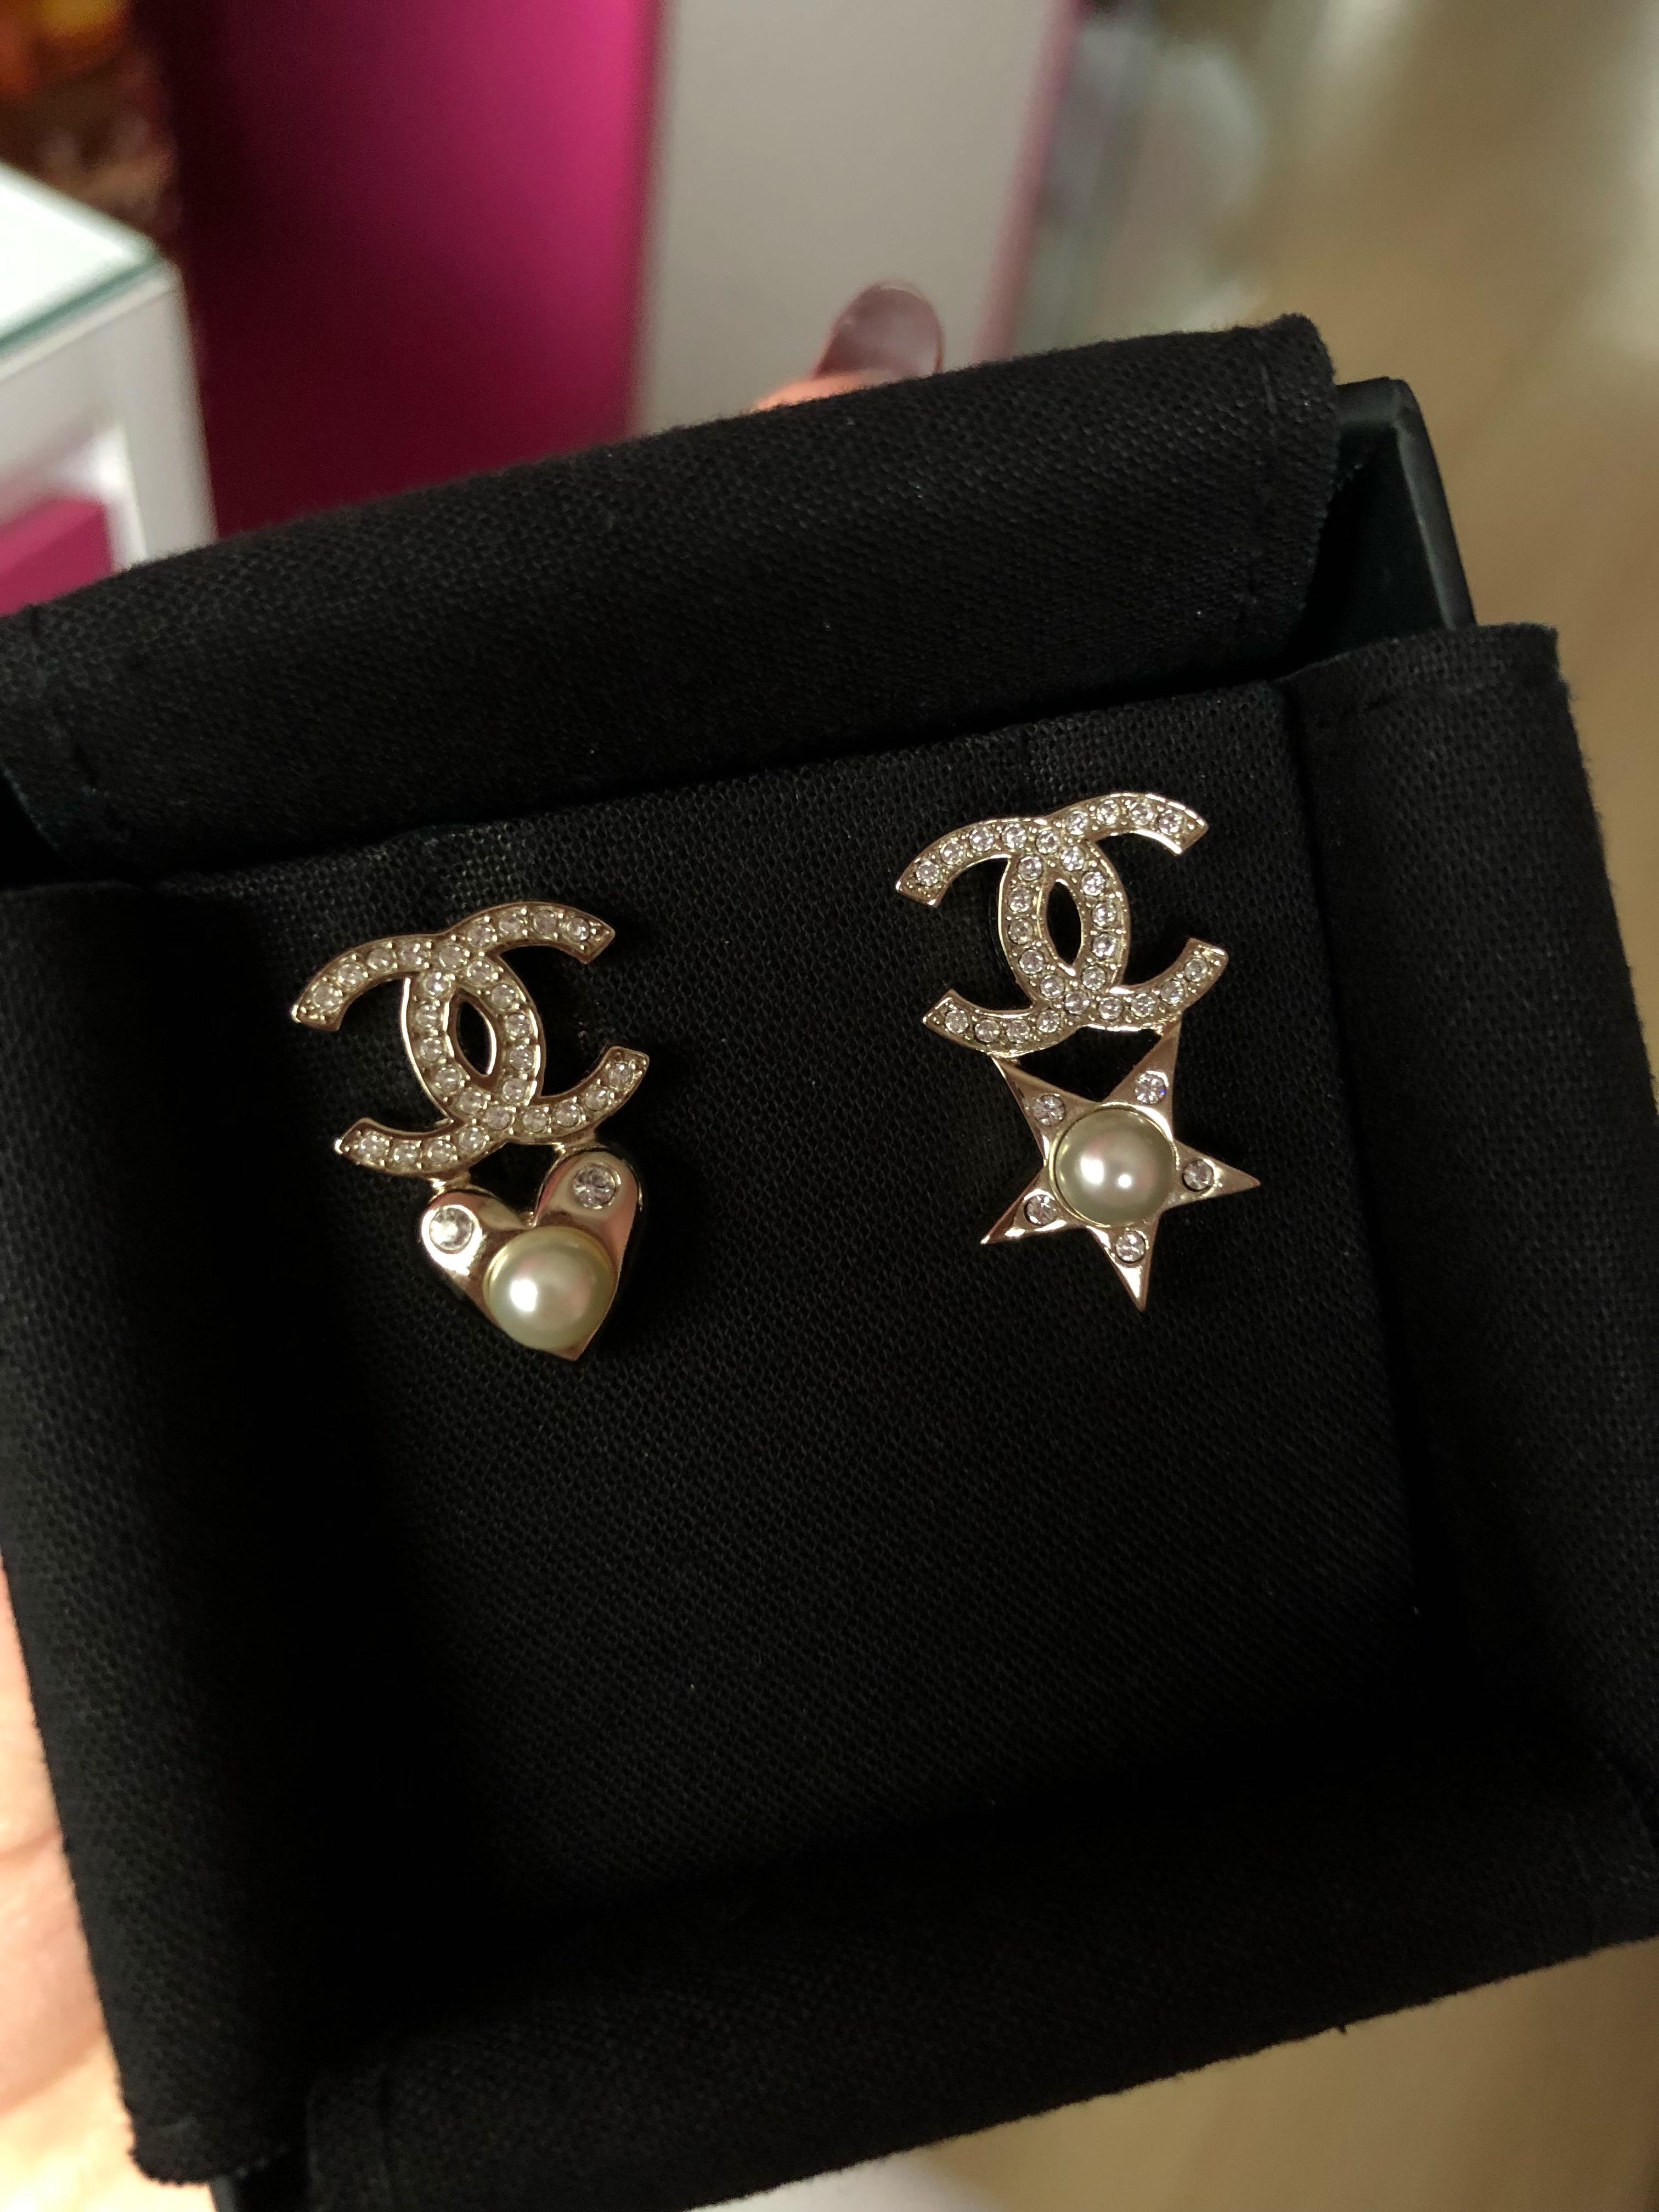 Chanel 19b Heart Star Earrings Women S Fashion Jewelry Organisers Earrings On Carousell